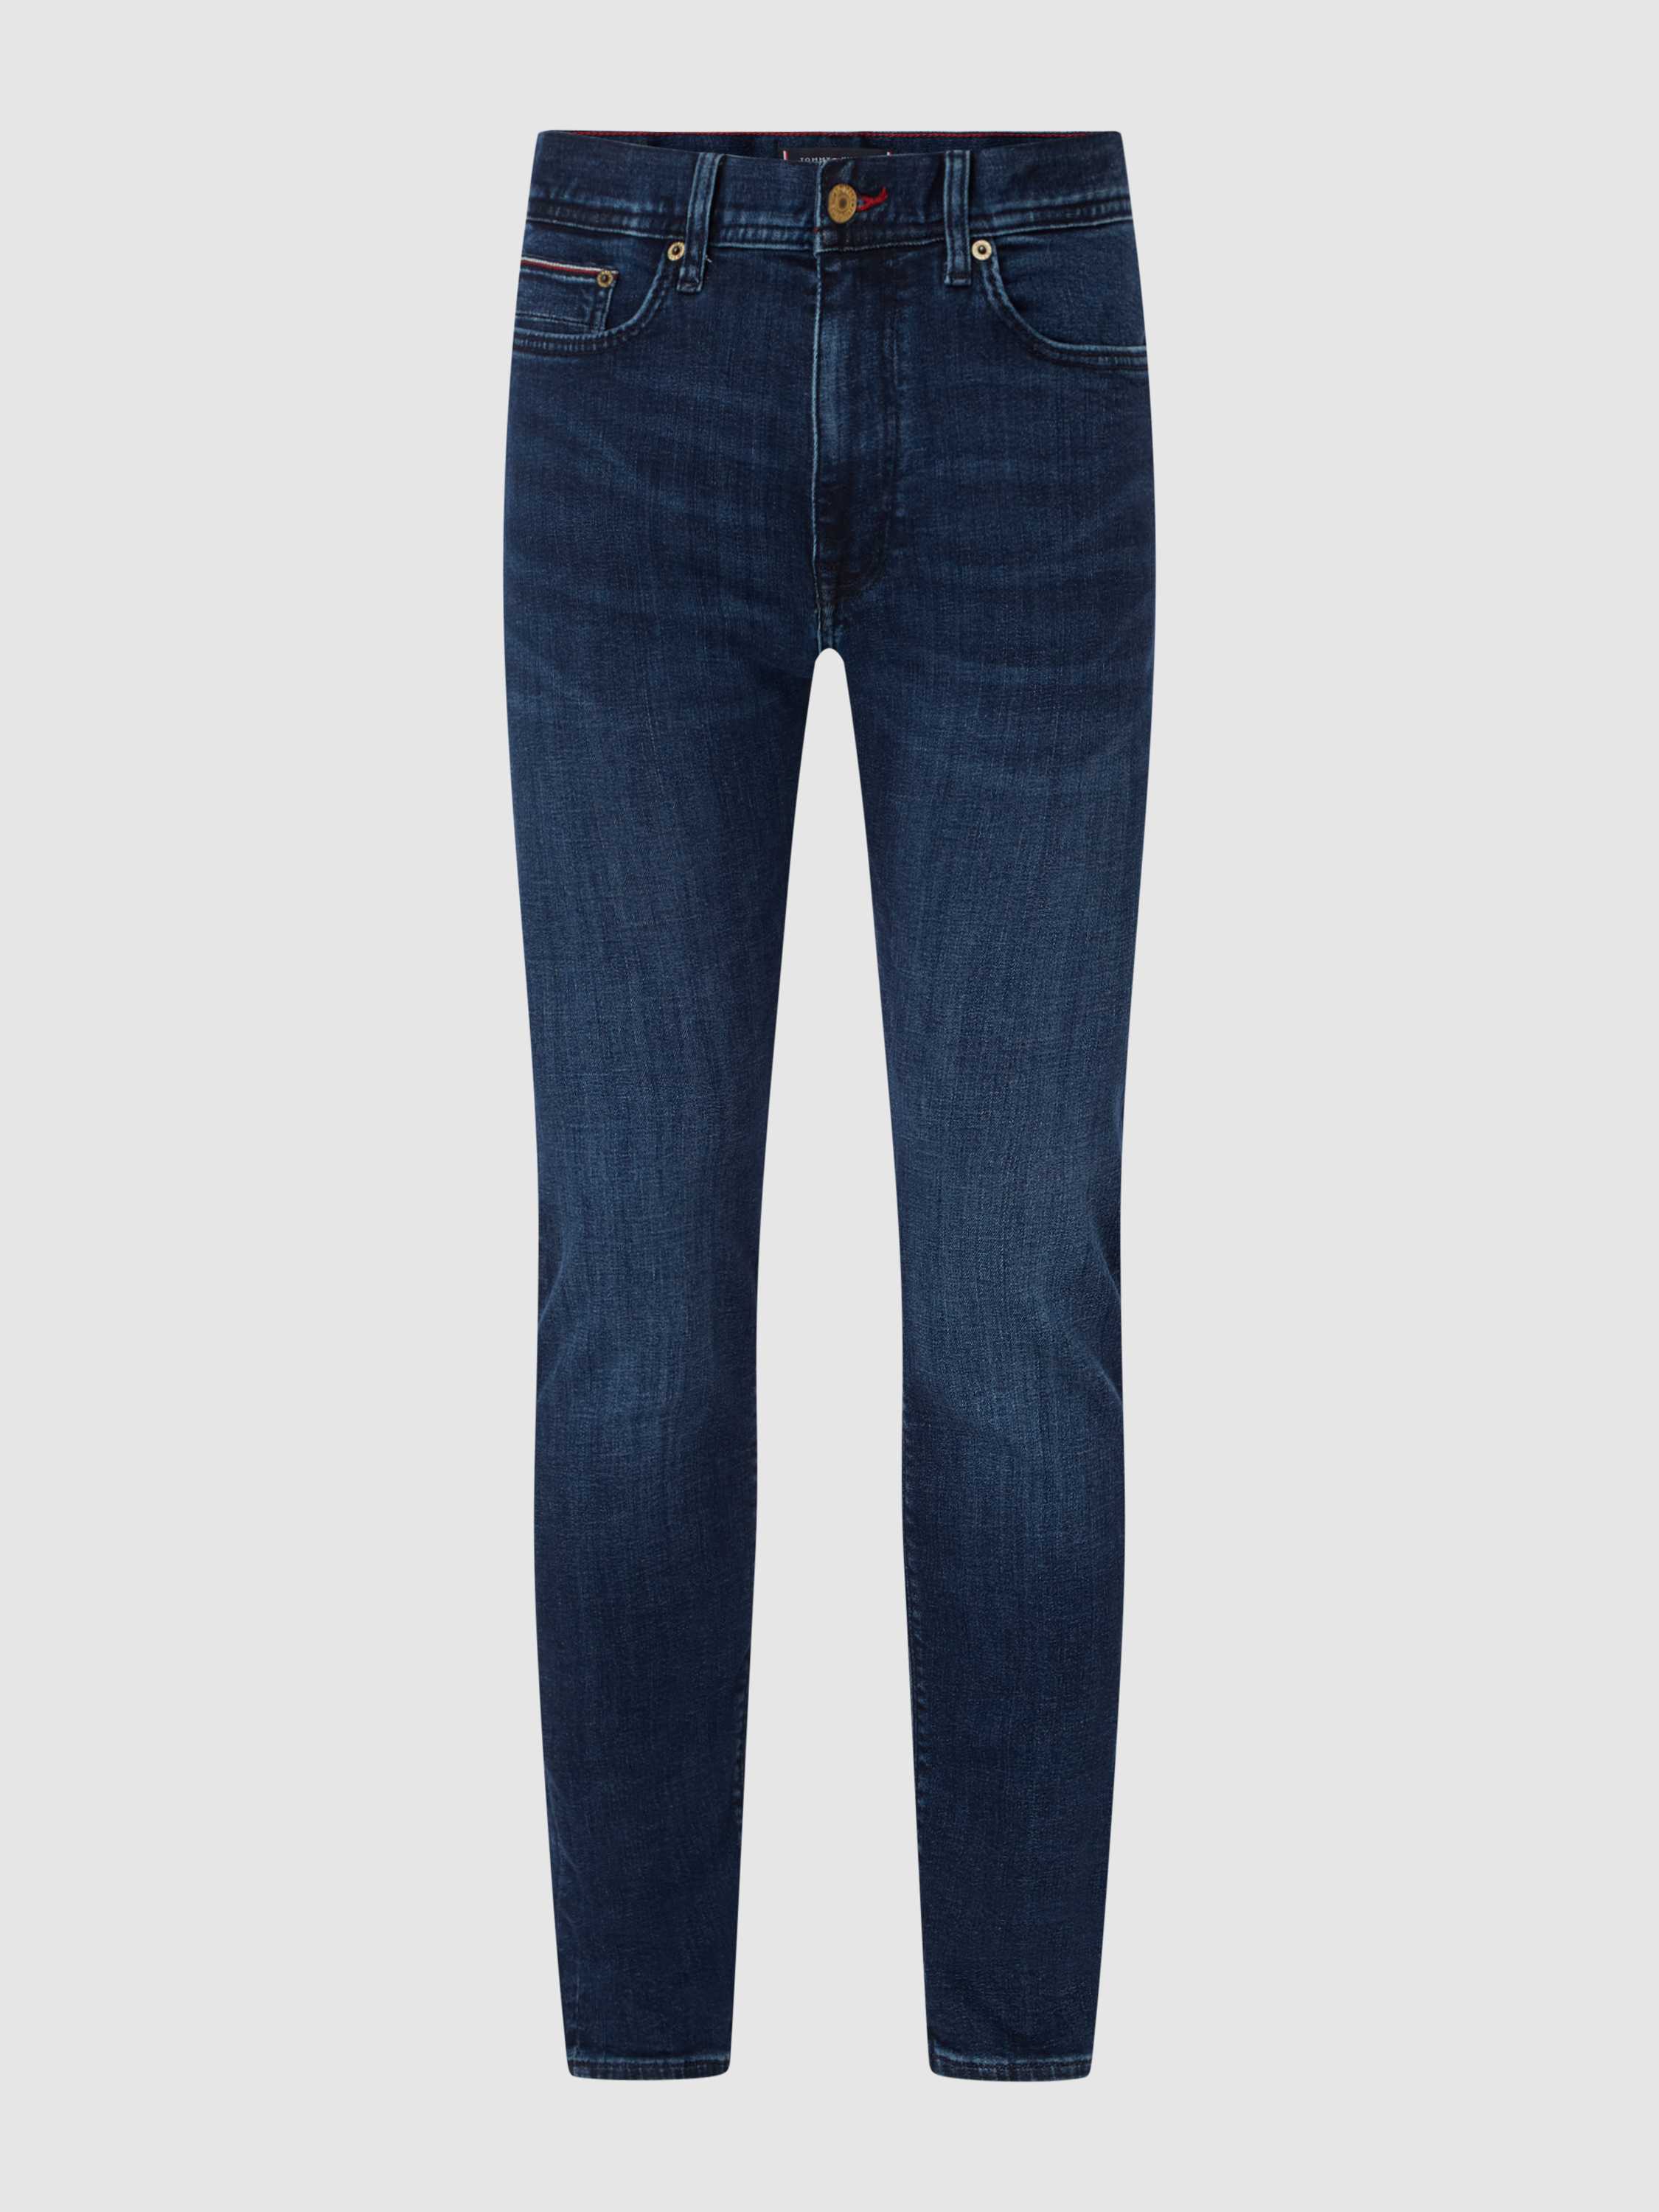 Slim Fit Jeans mit Stretch-Anteil Modell 'Bleecker'